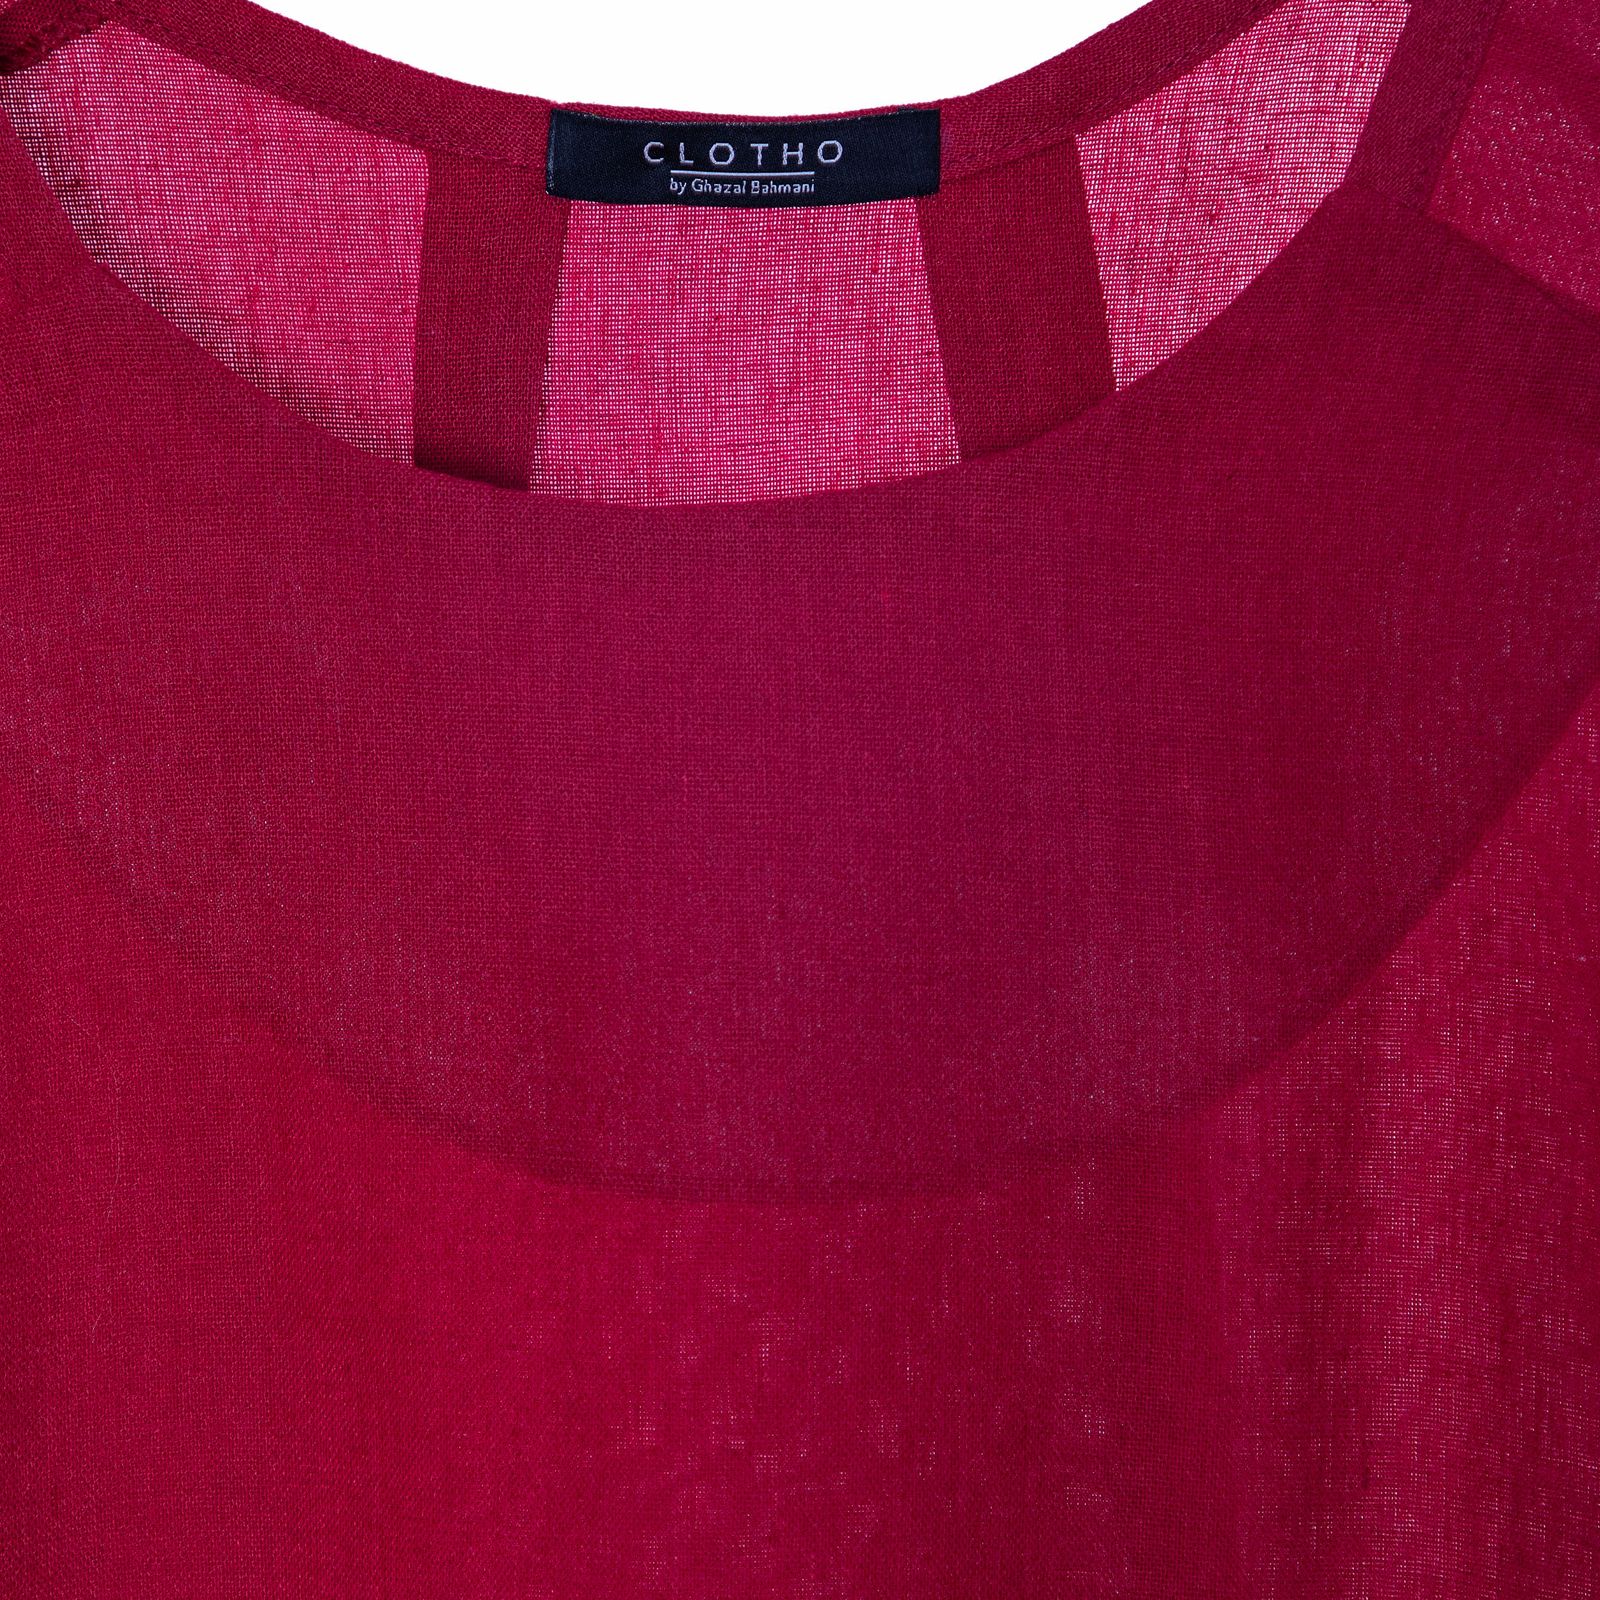 پیراهن زنانه کلوتو مدل TUSCAN drs.rouge -  - 2